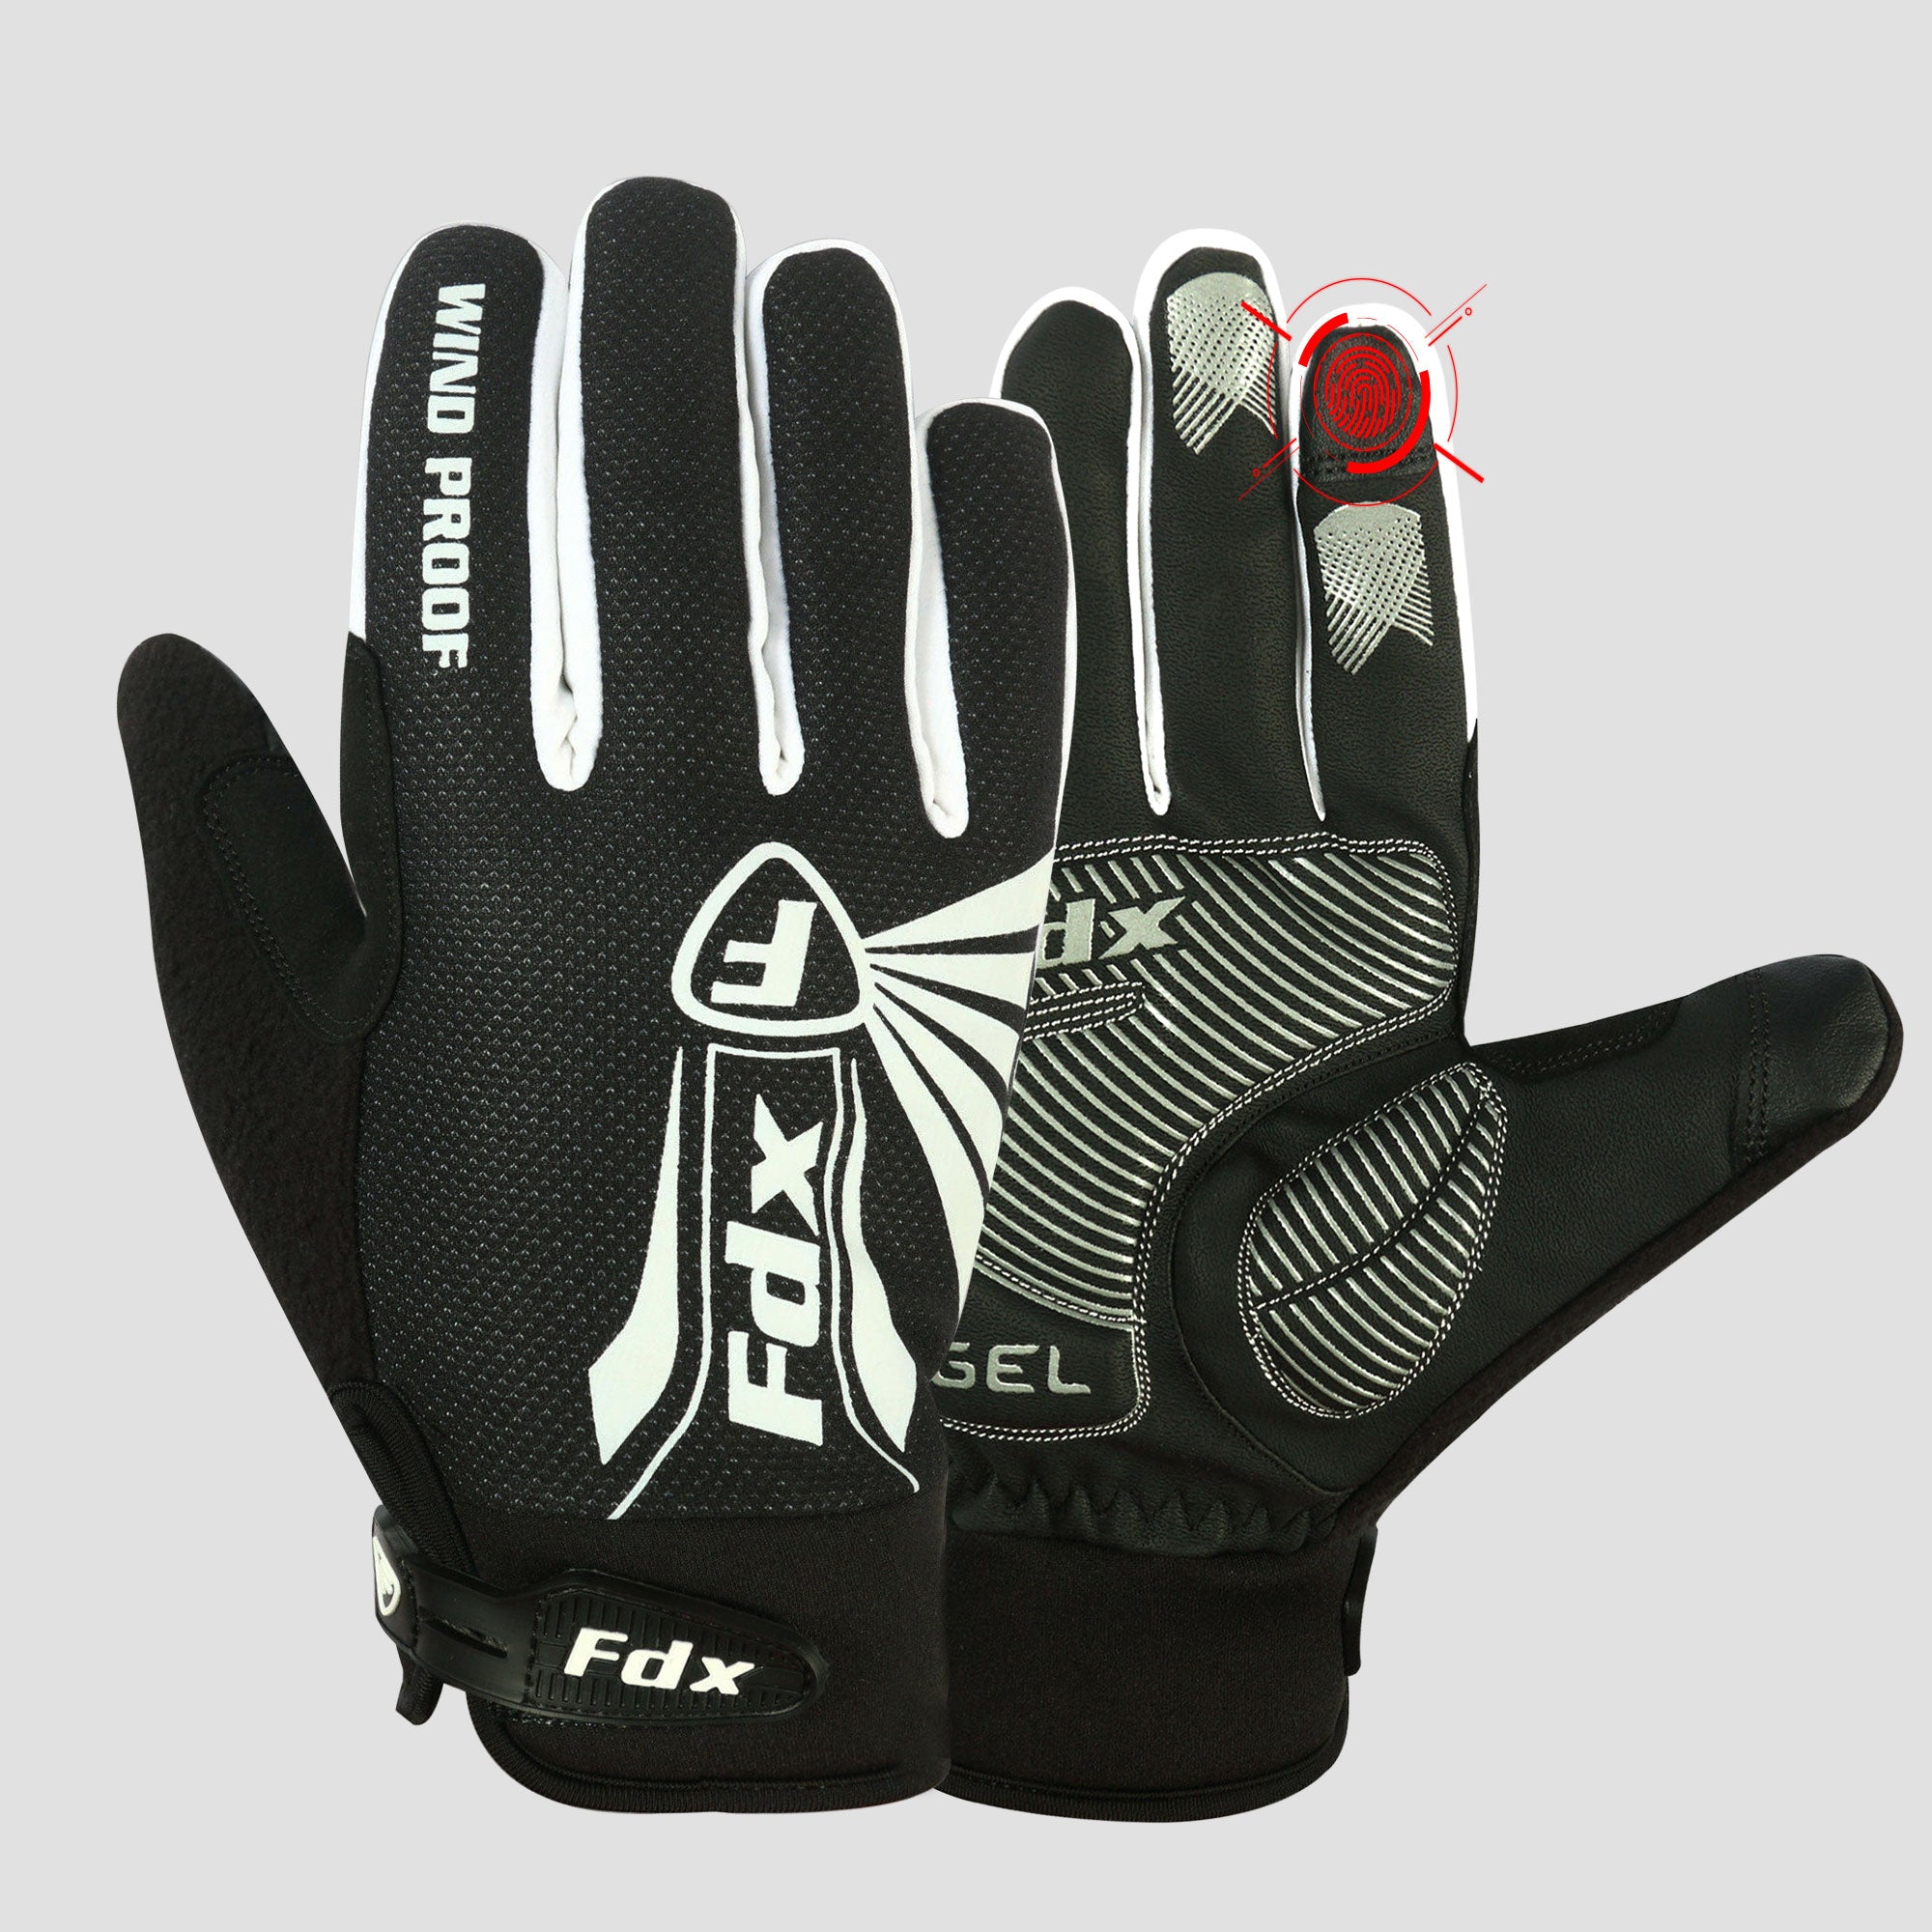 Fdx Zesto White Full Finger Winter Cycling Gloves